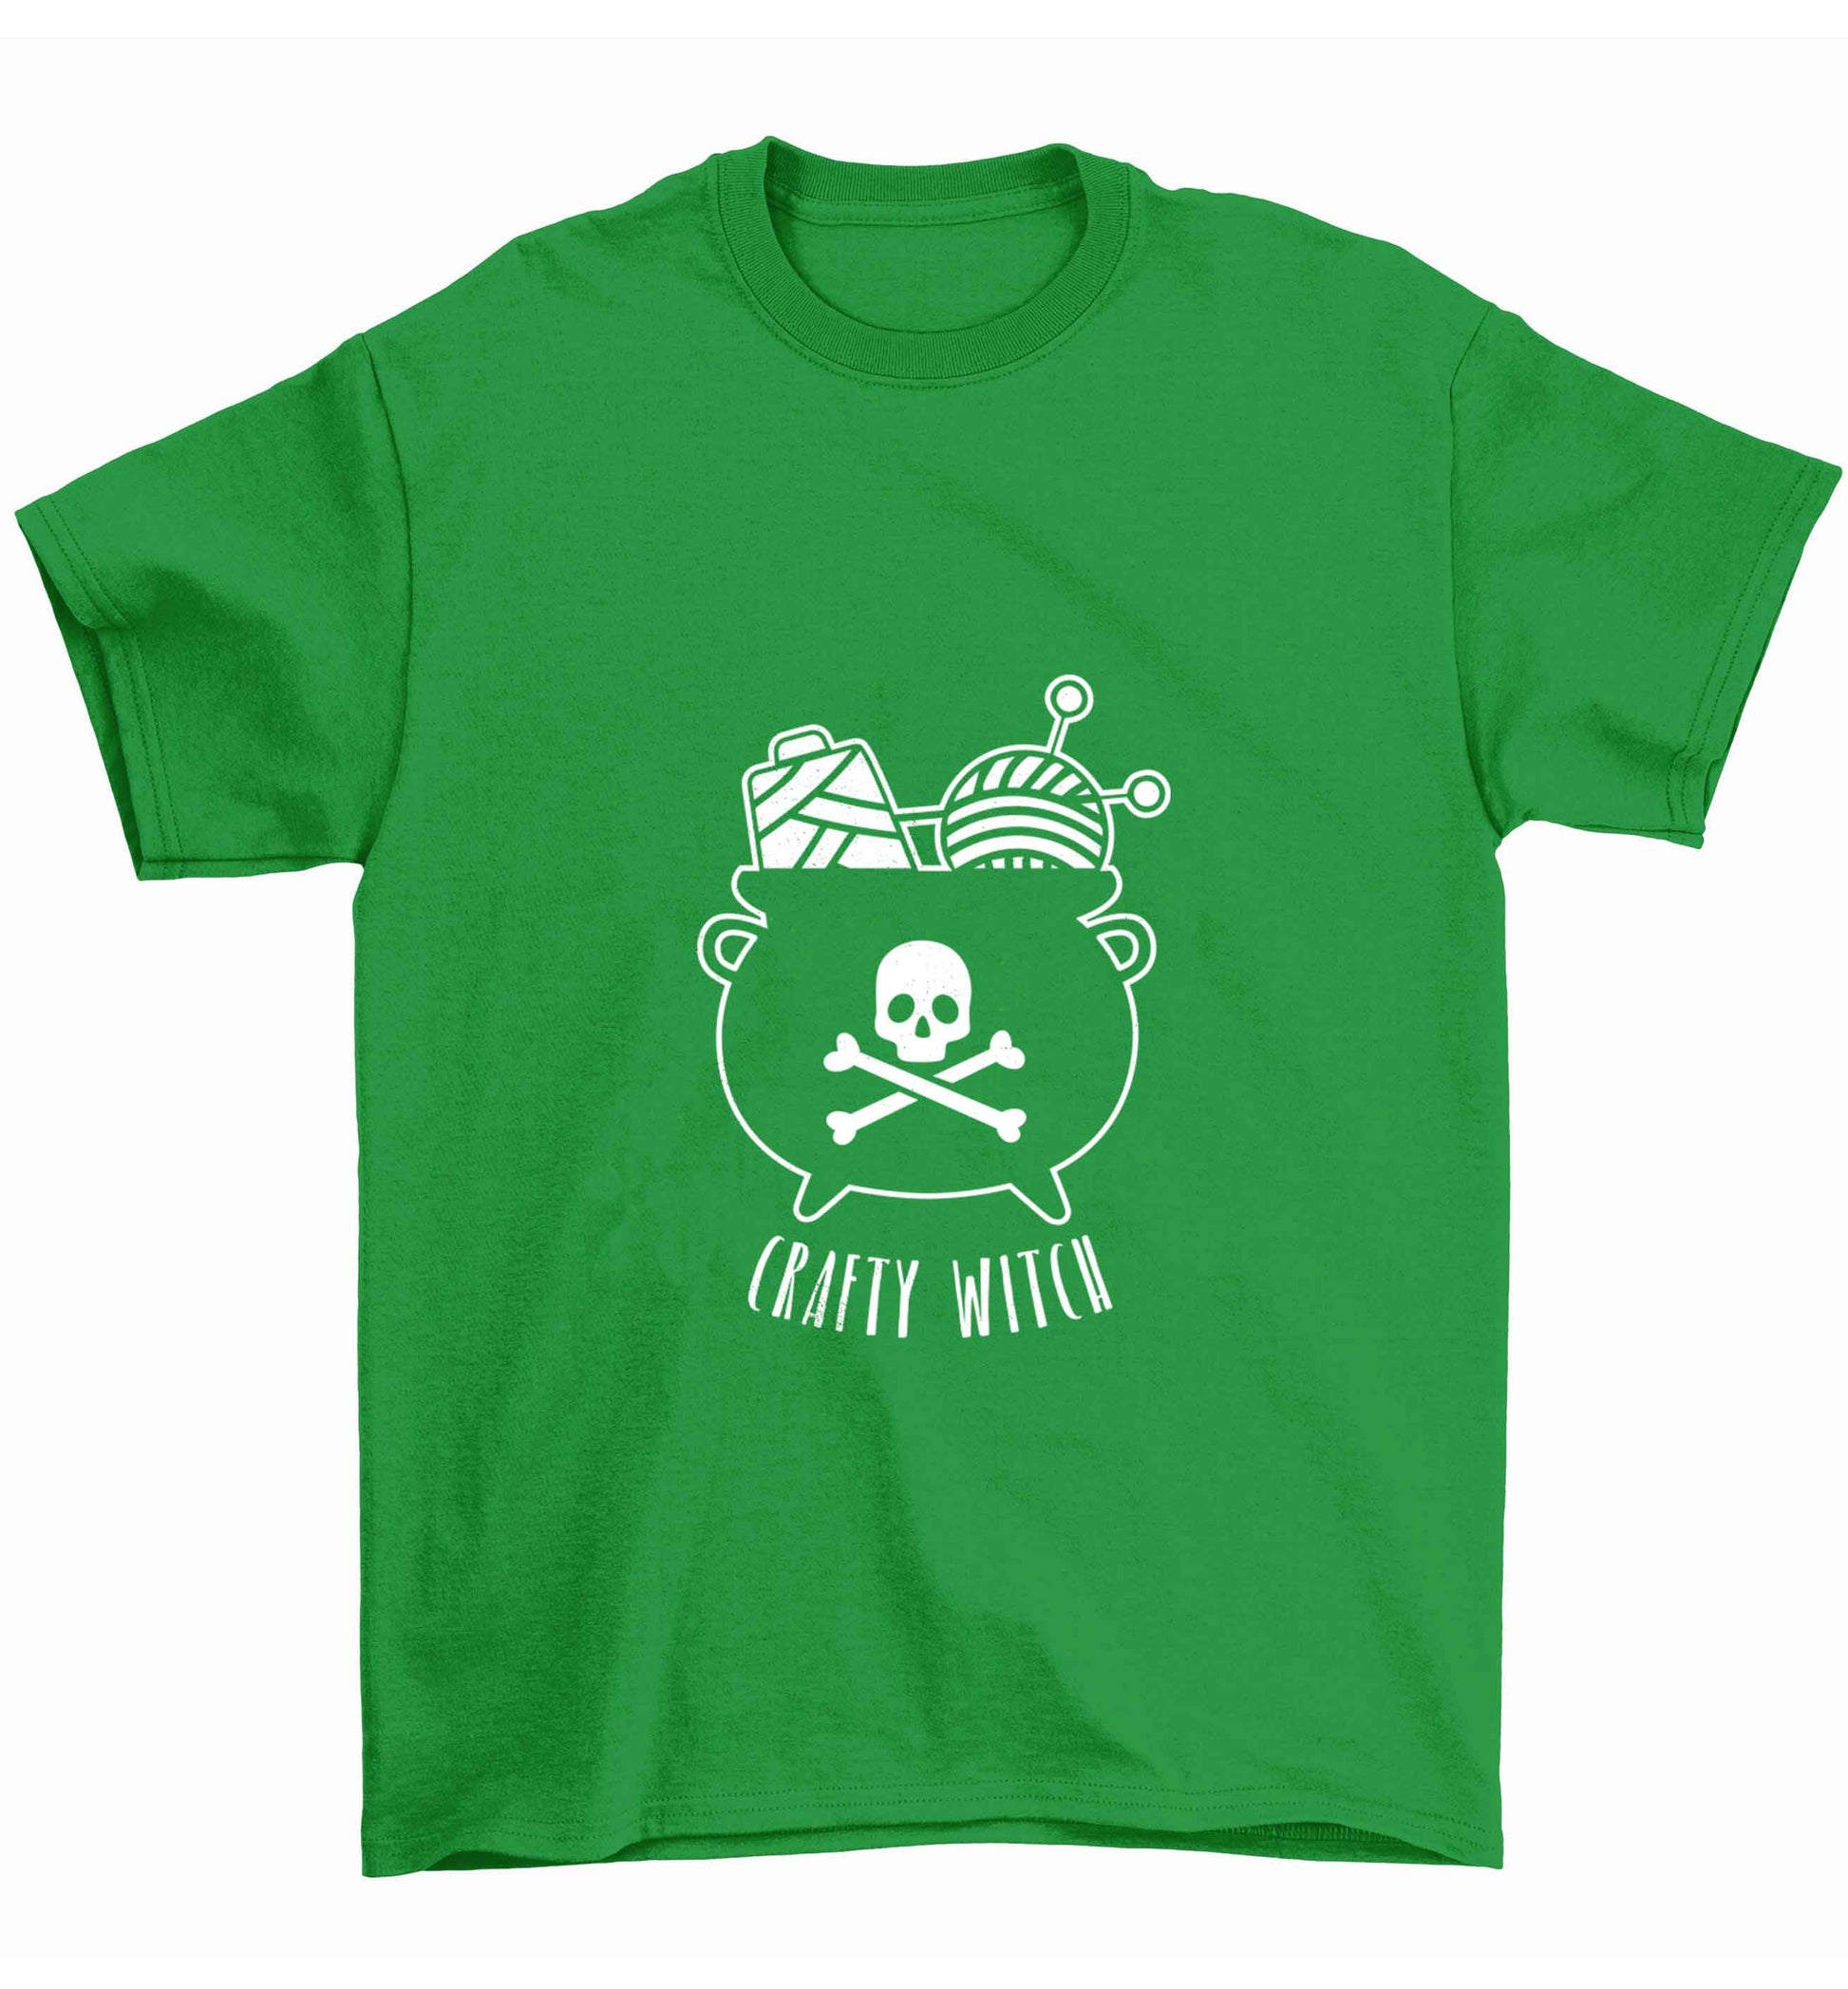 Crafty witch Children's green Tshirt 12-13 Years